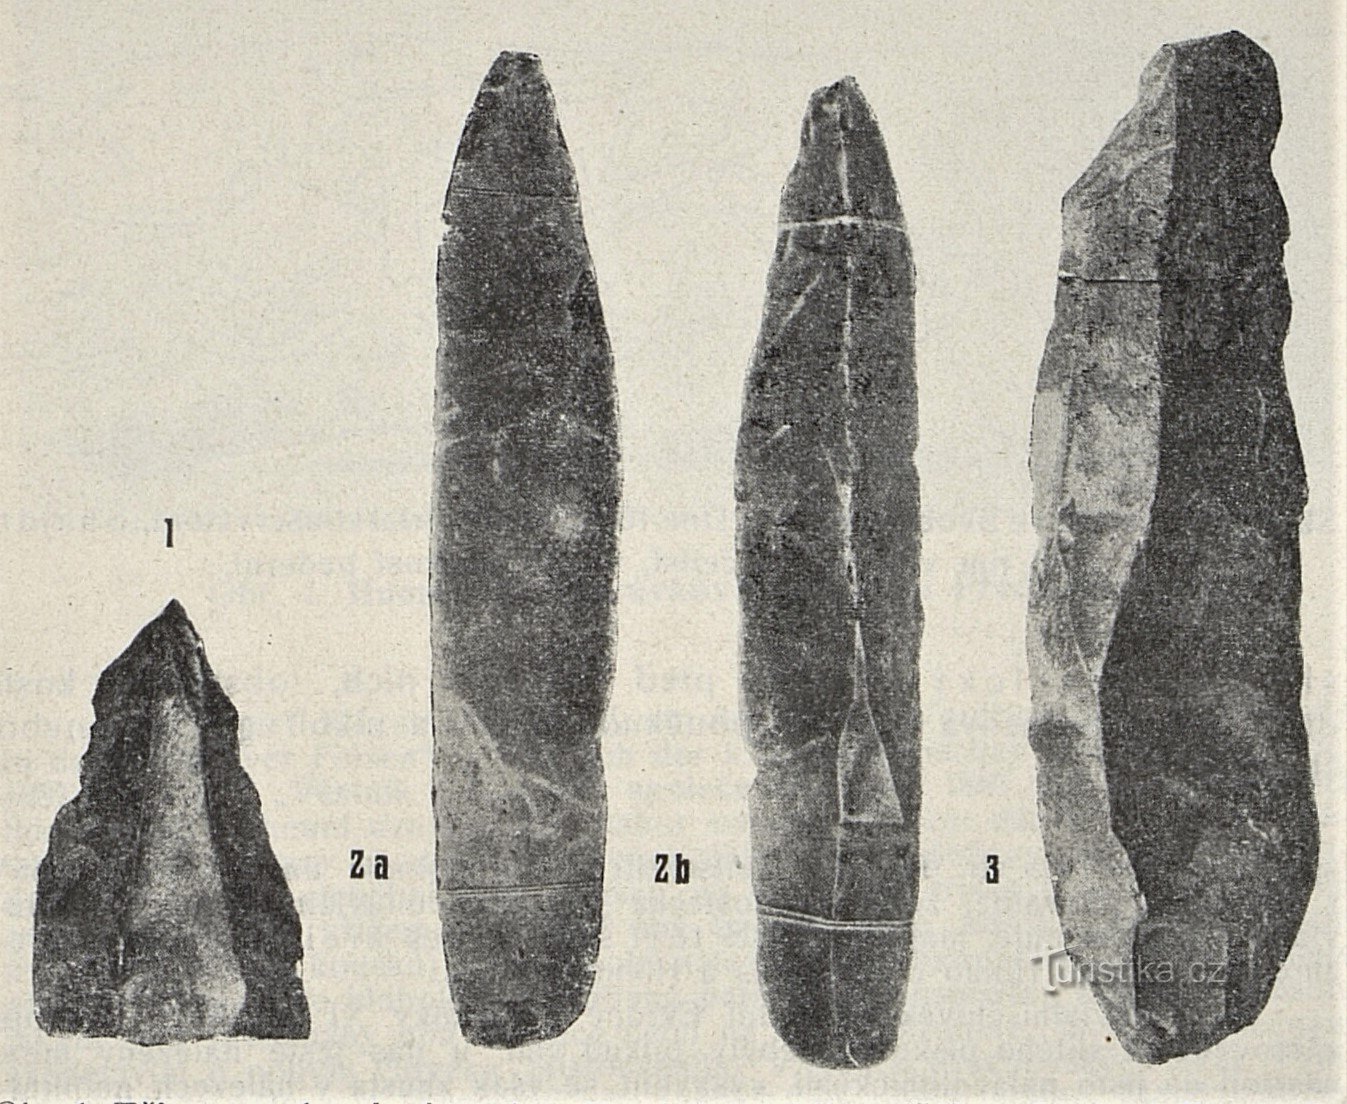 Βιομηχανία πέτρας από σκελετούς μαμούθ από το Svobodné Dvory (1899)